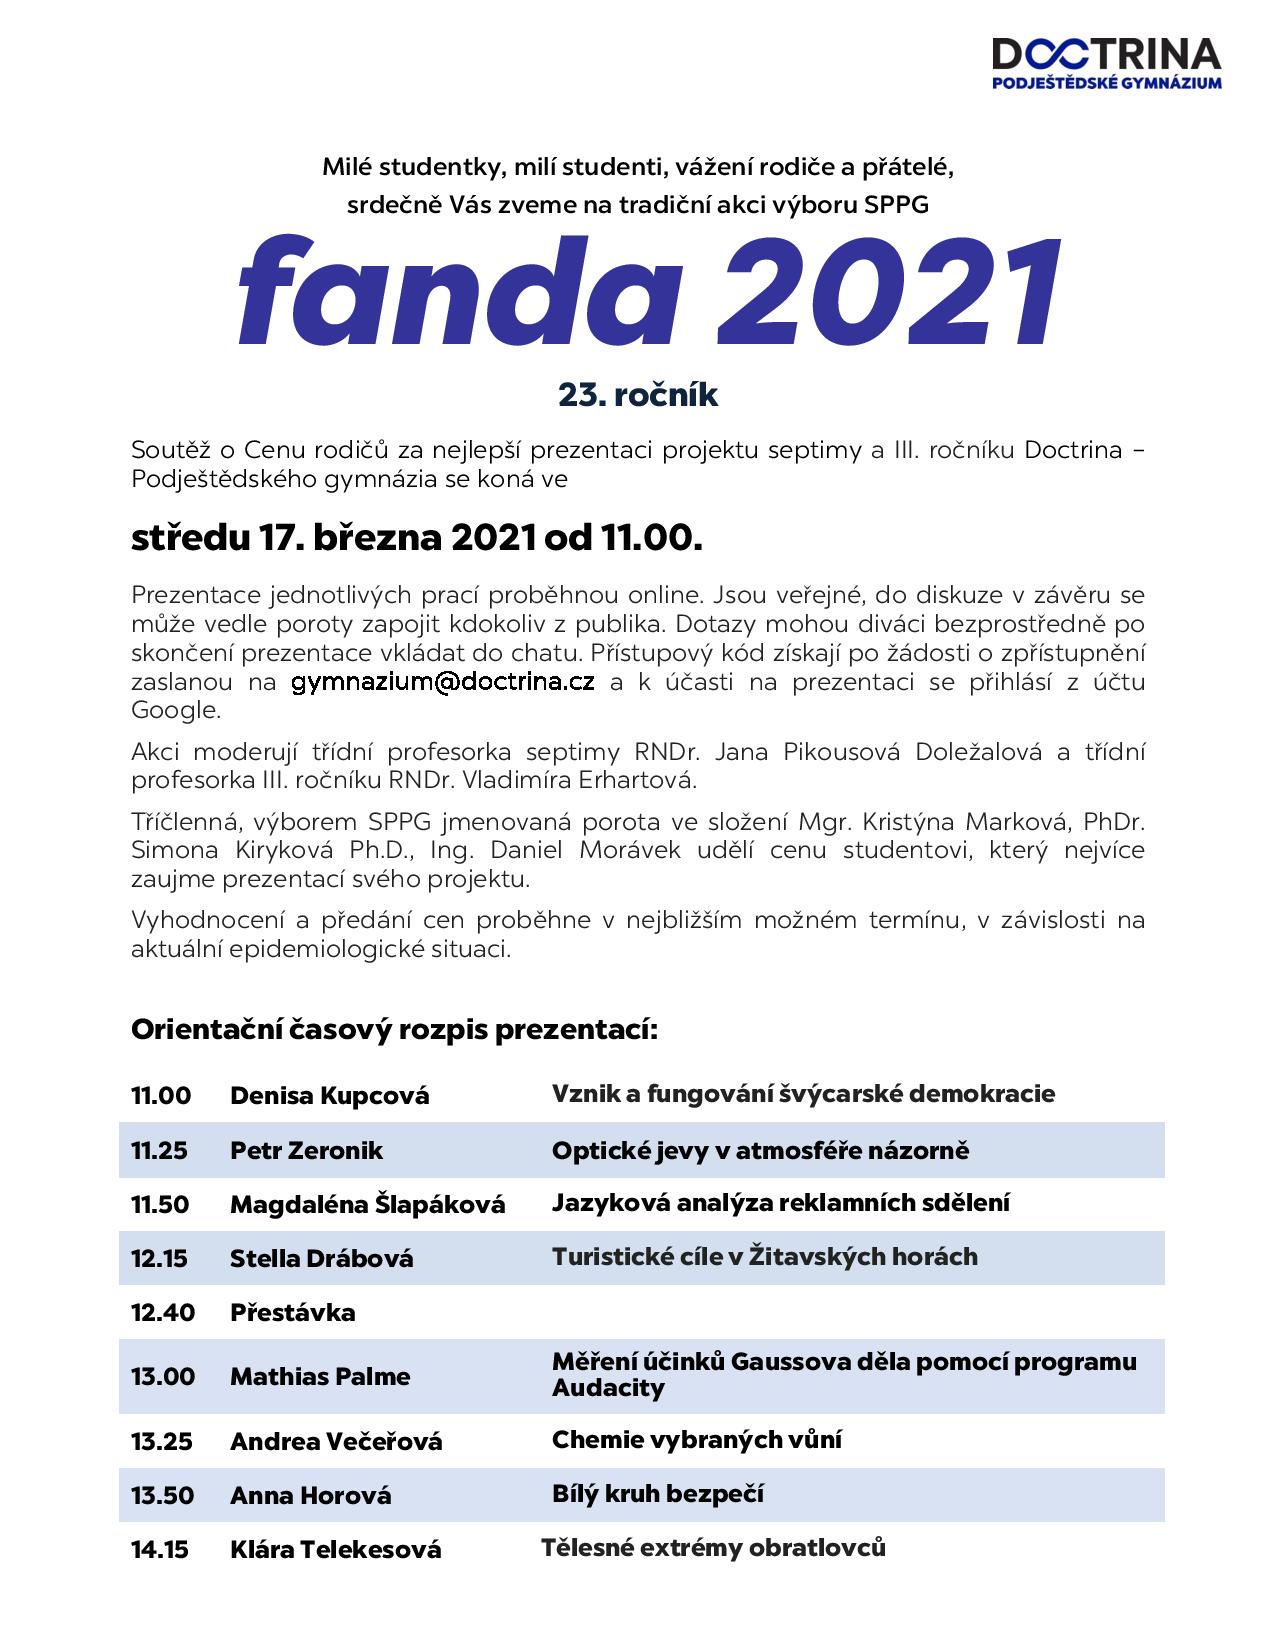  Fanda-21